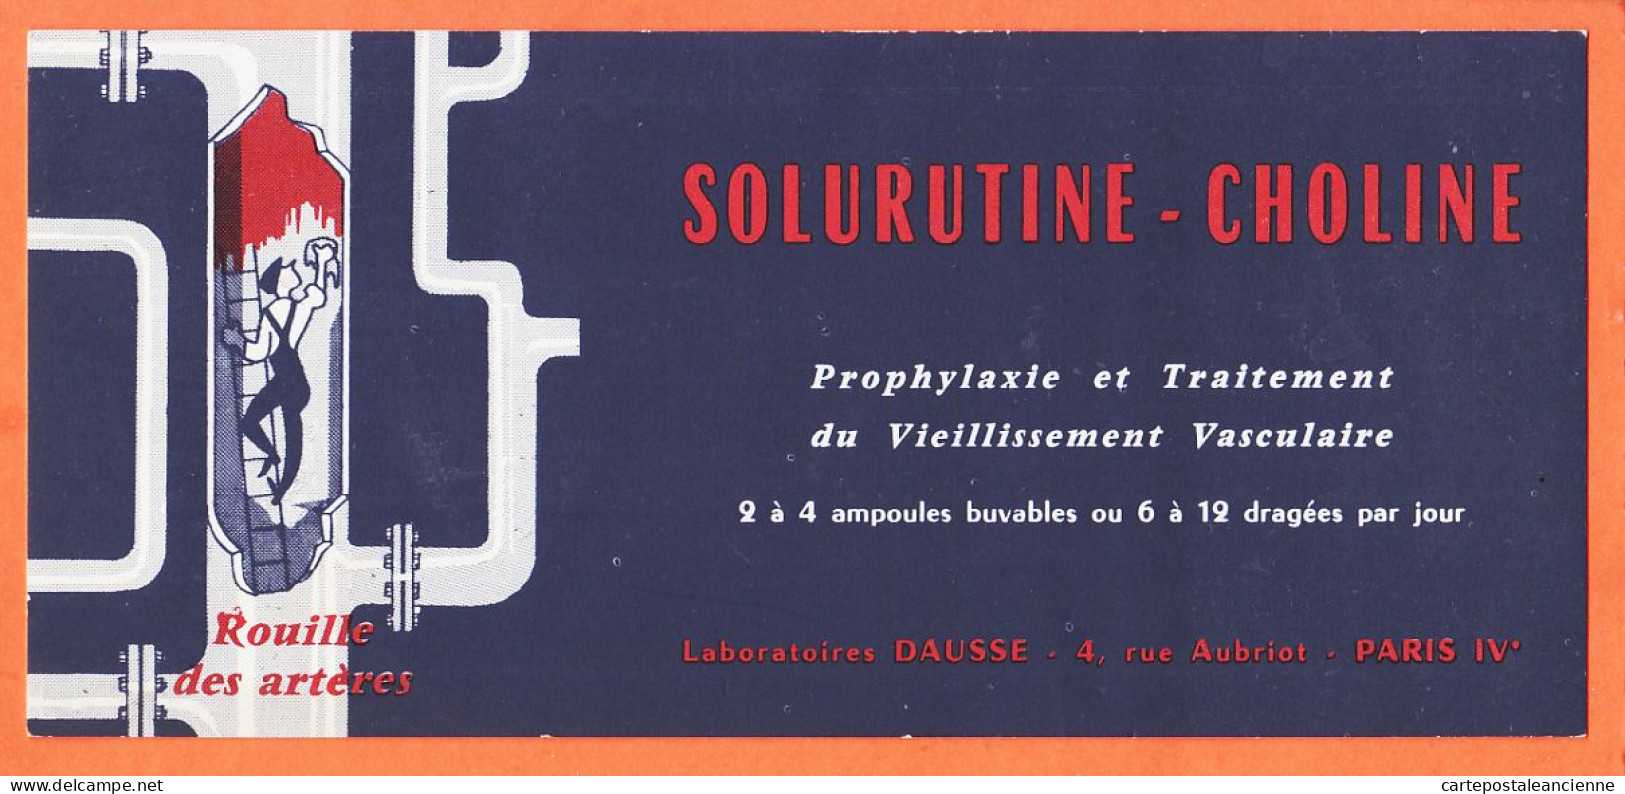 06143 / PARIS IV Laboratoire DAUSSE 4 Rue AUBRIOT Prophylaxie Traitement Vieillissement SOLURUTINE-CHOLINE Buvard - Produits Pharmaceutiques